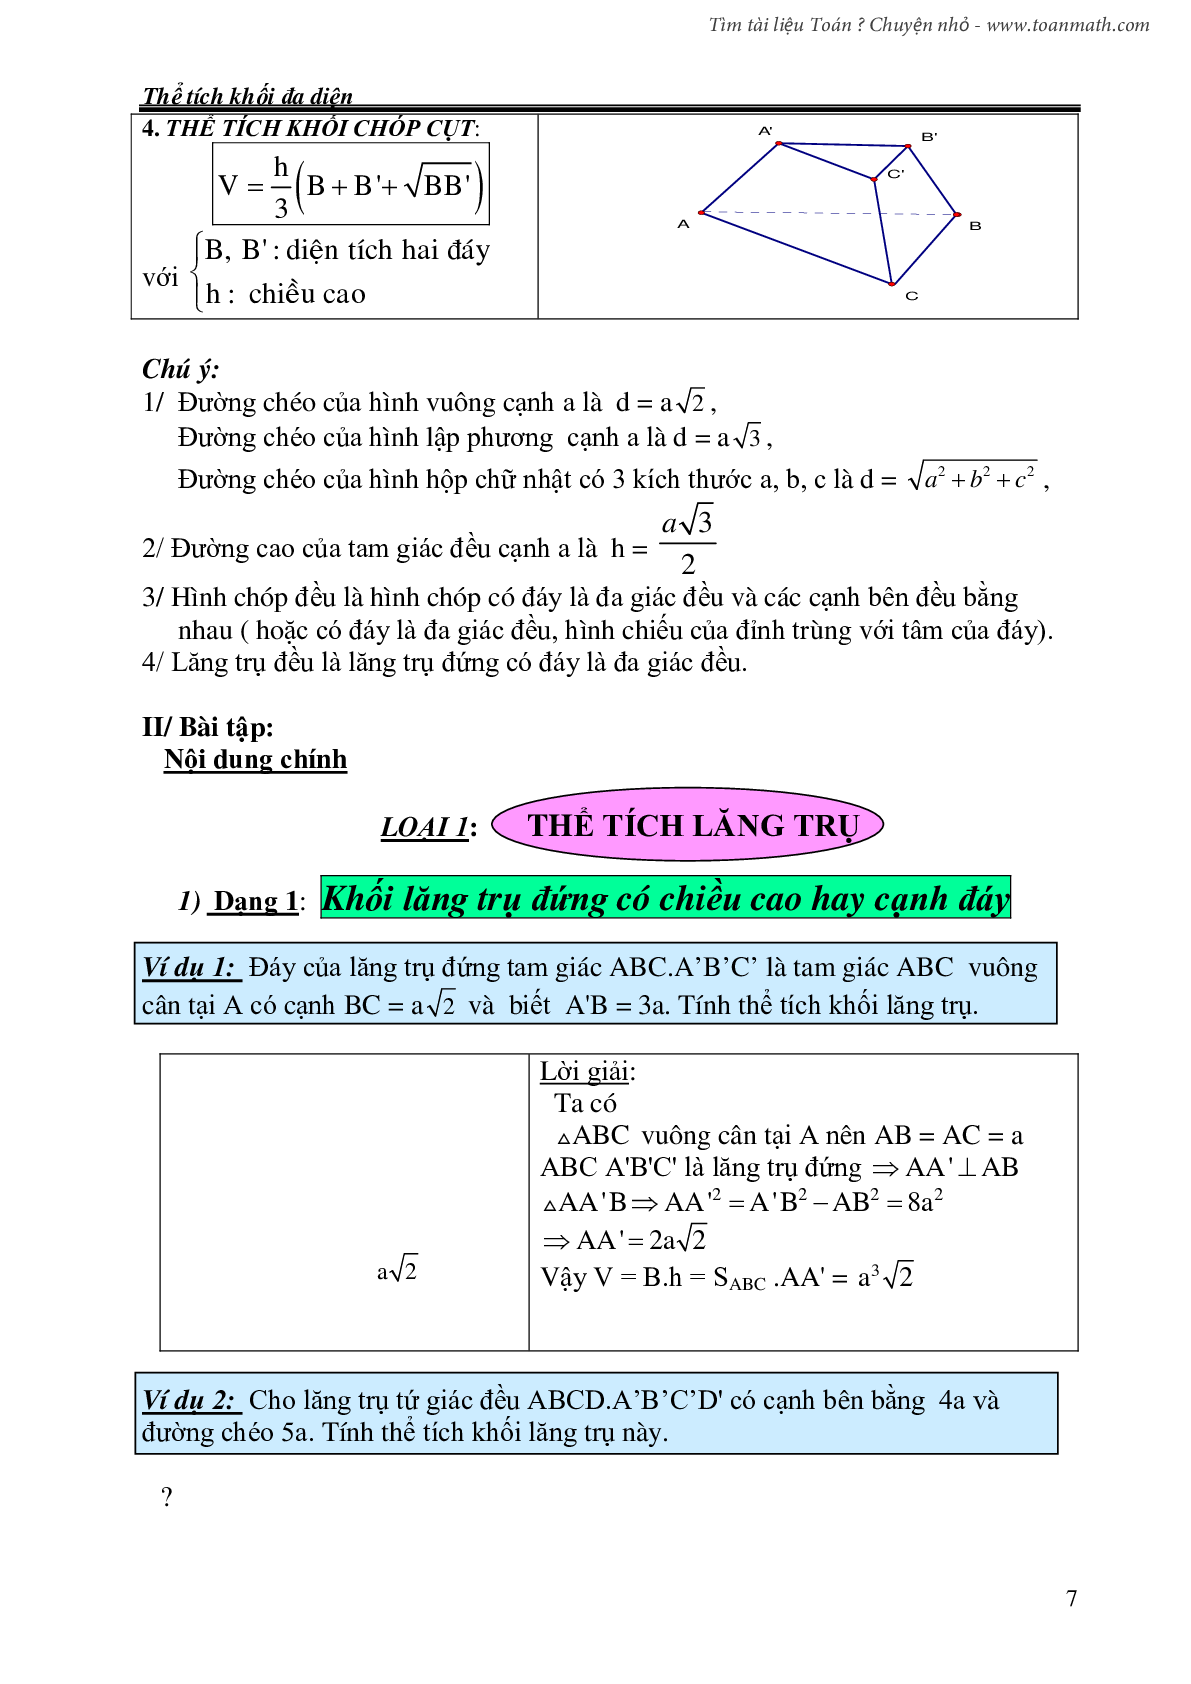 Chuyên đề: Thể tích khối đa diện môn Toán lớp 12 (trang 7)